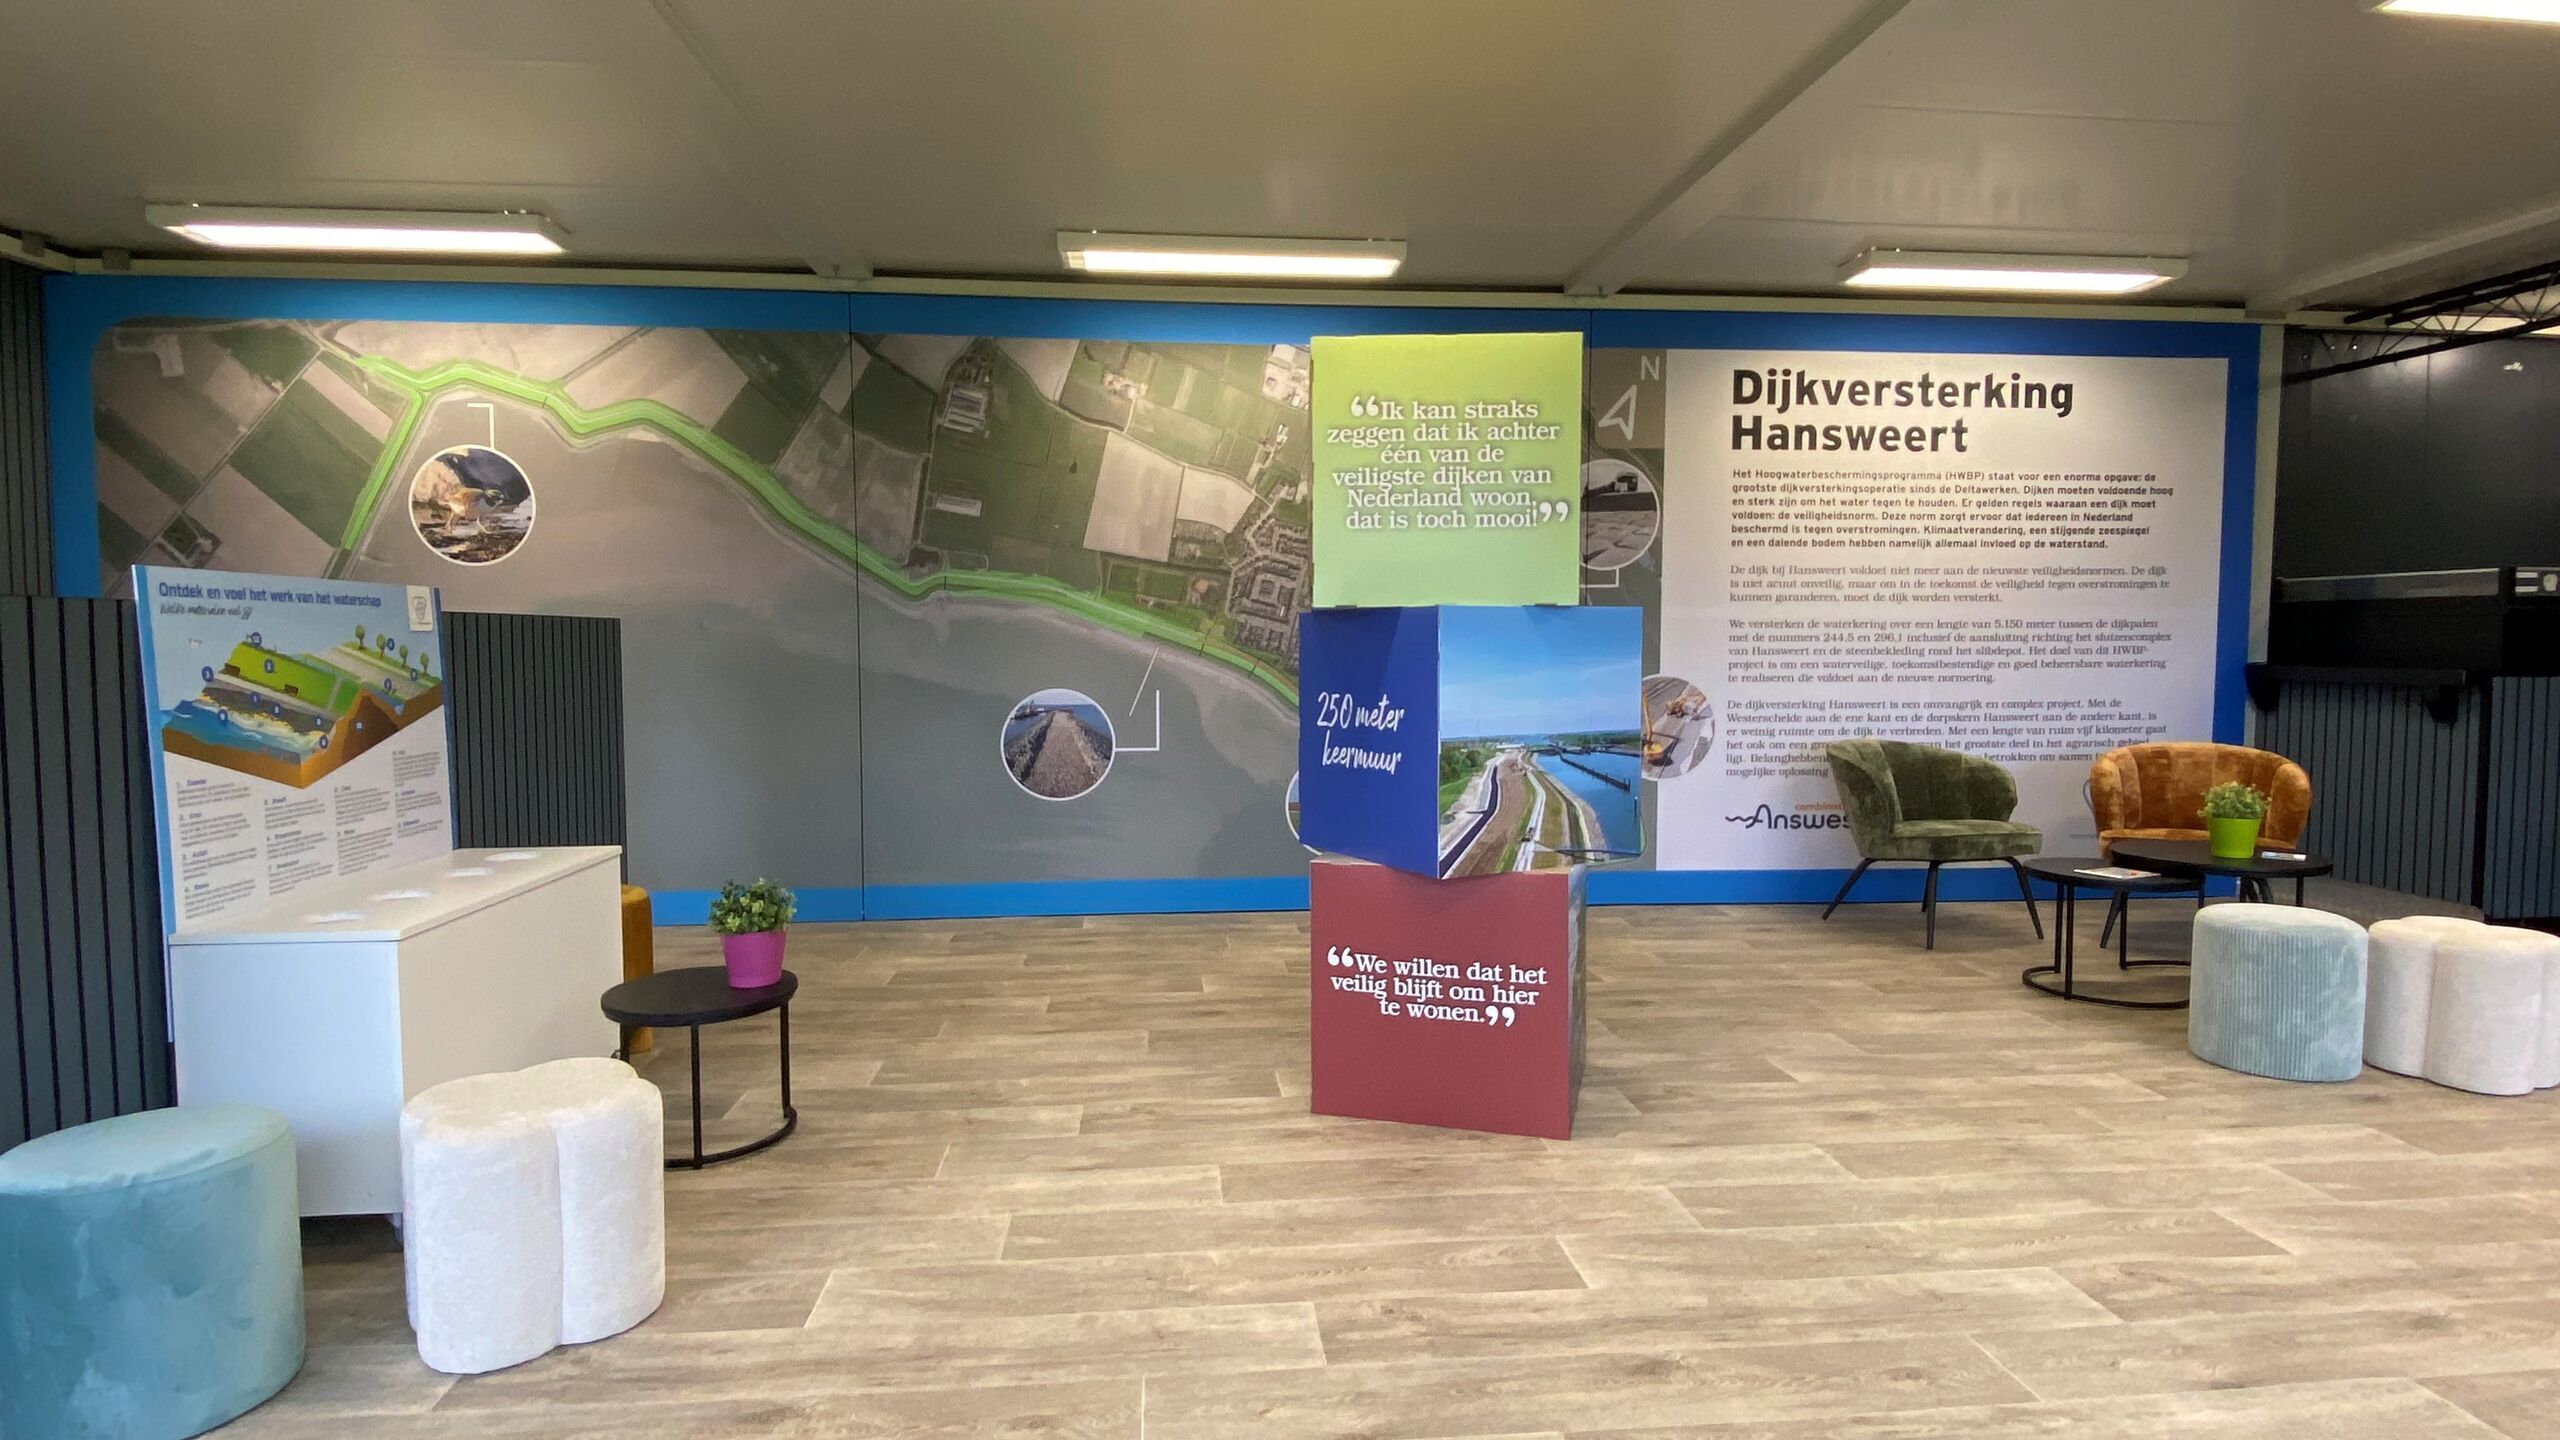 De binnenruimte van het informatiecentrum met een groot wandpaneel van het te versterken dijktraject in Hansweert